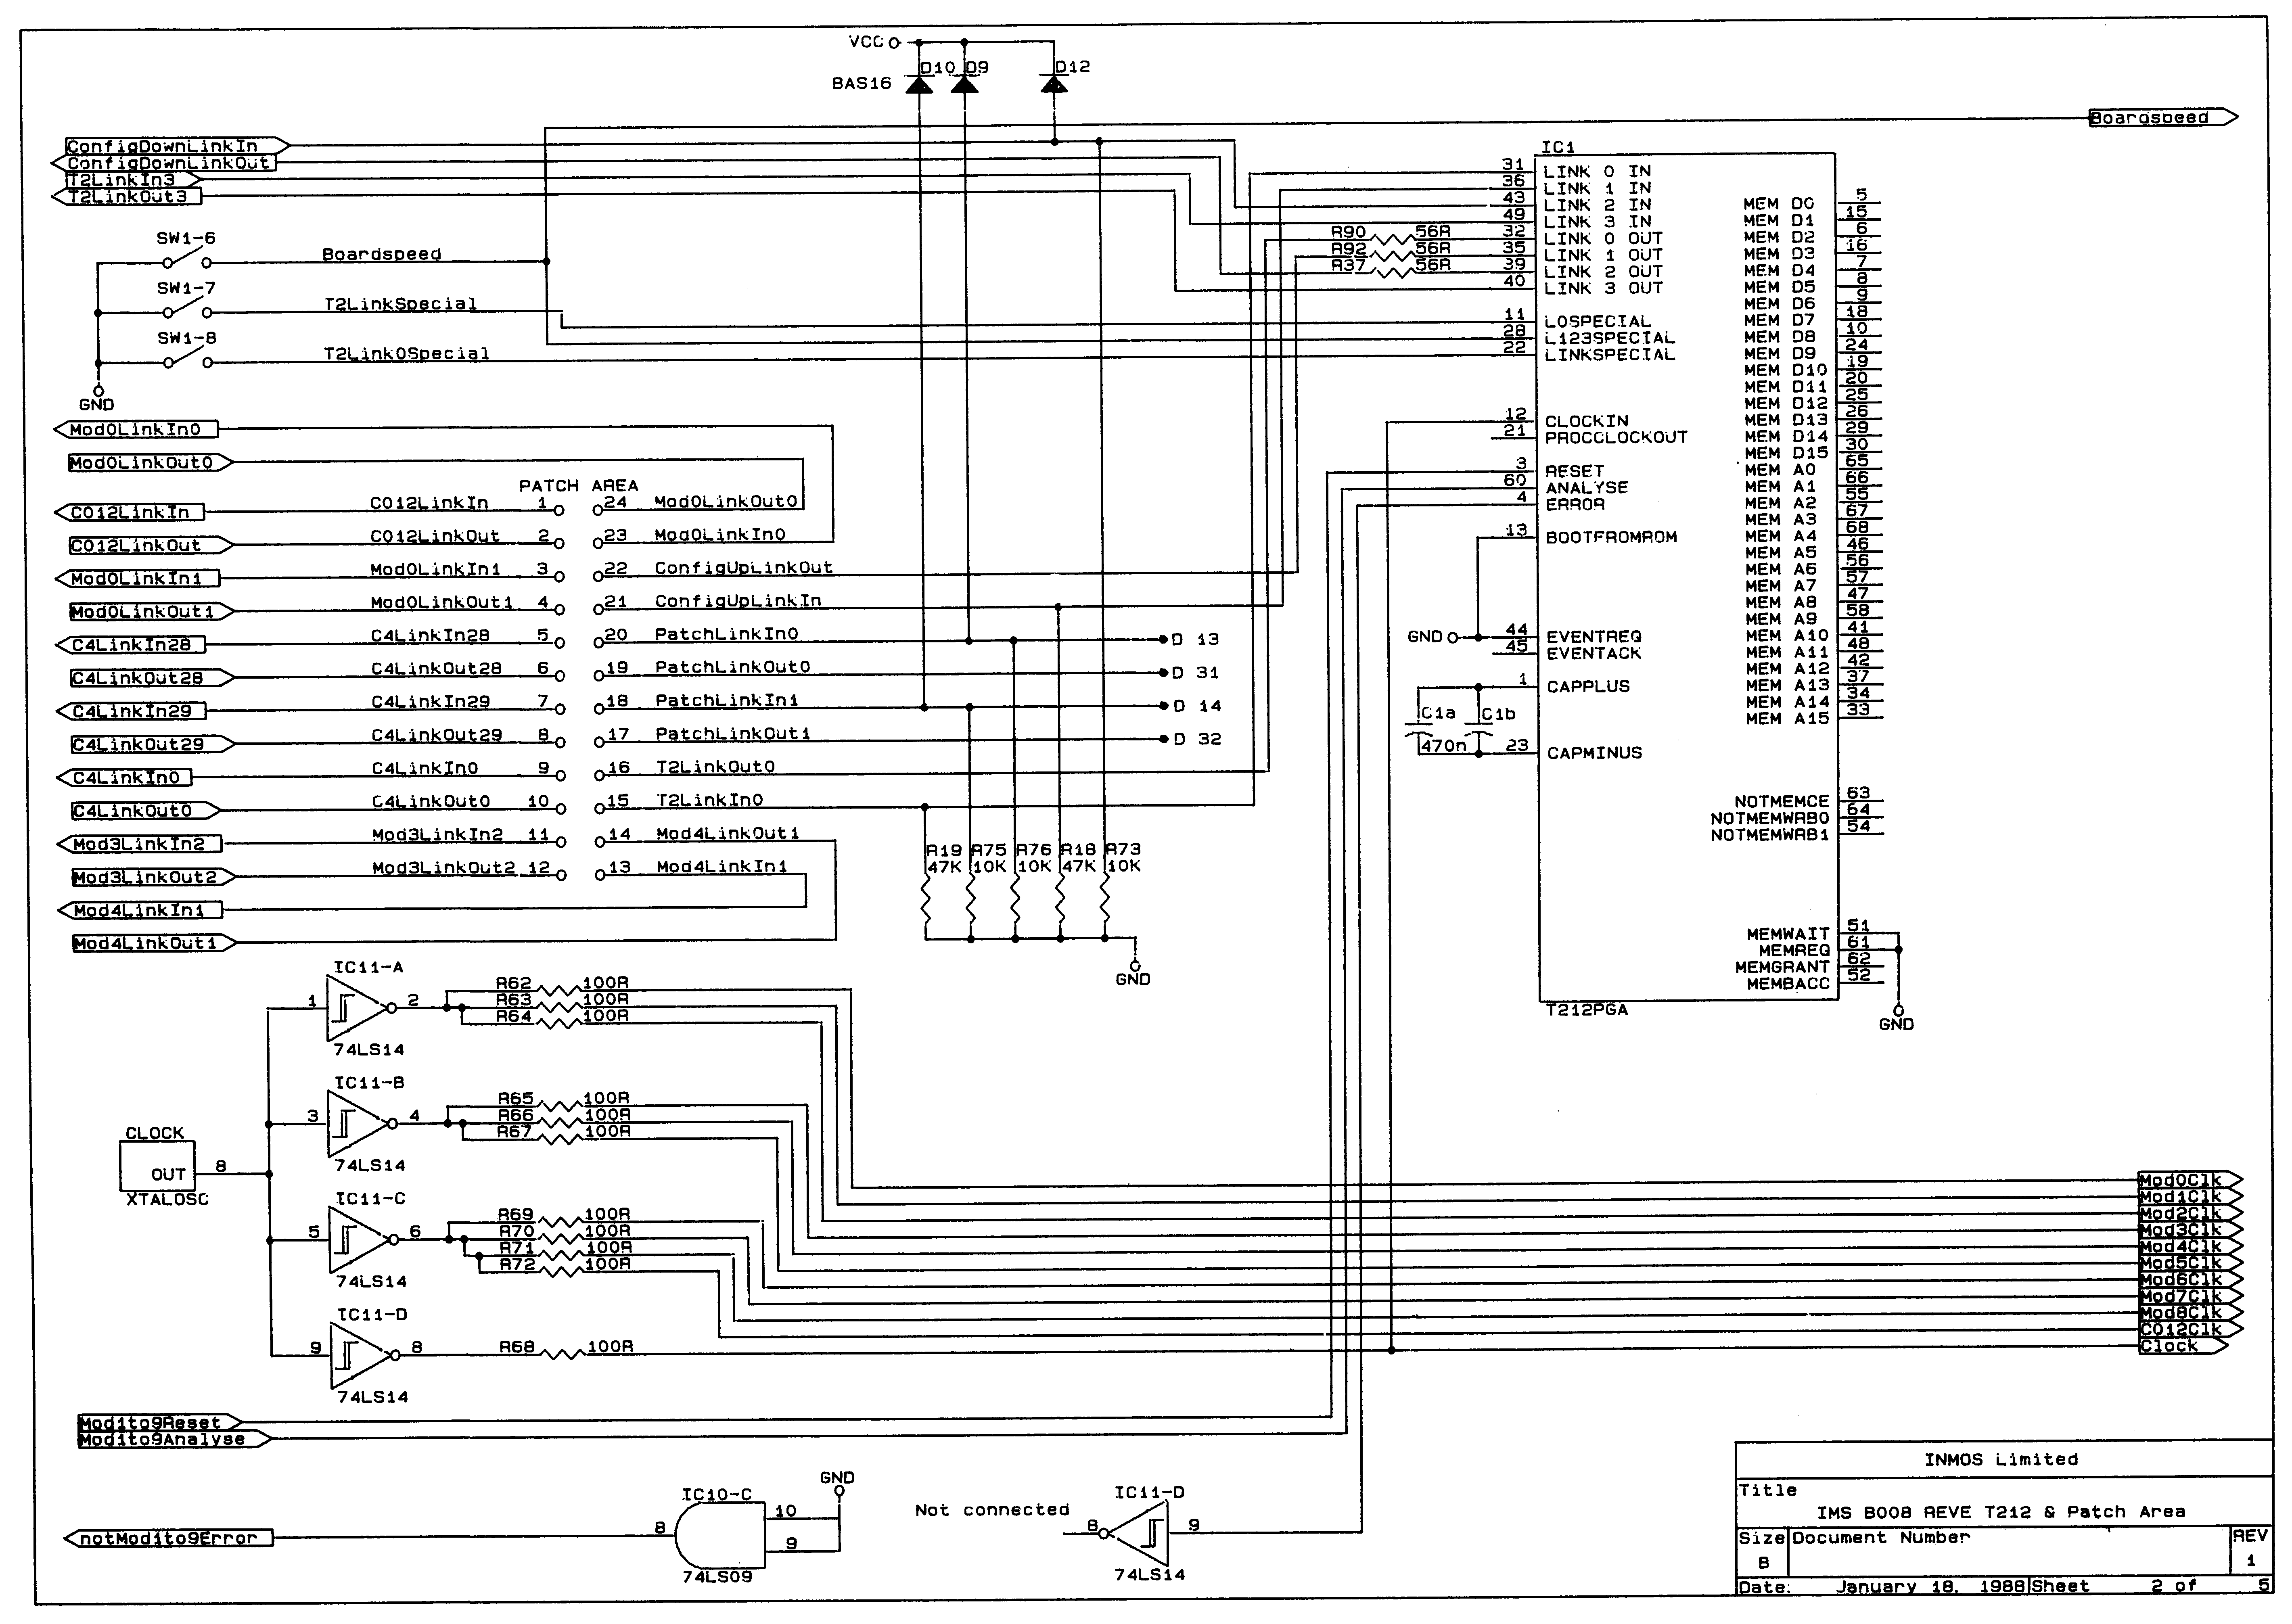 Circuit Diagram 2 of 5